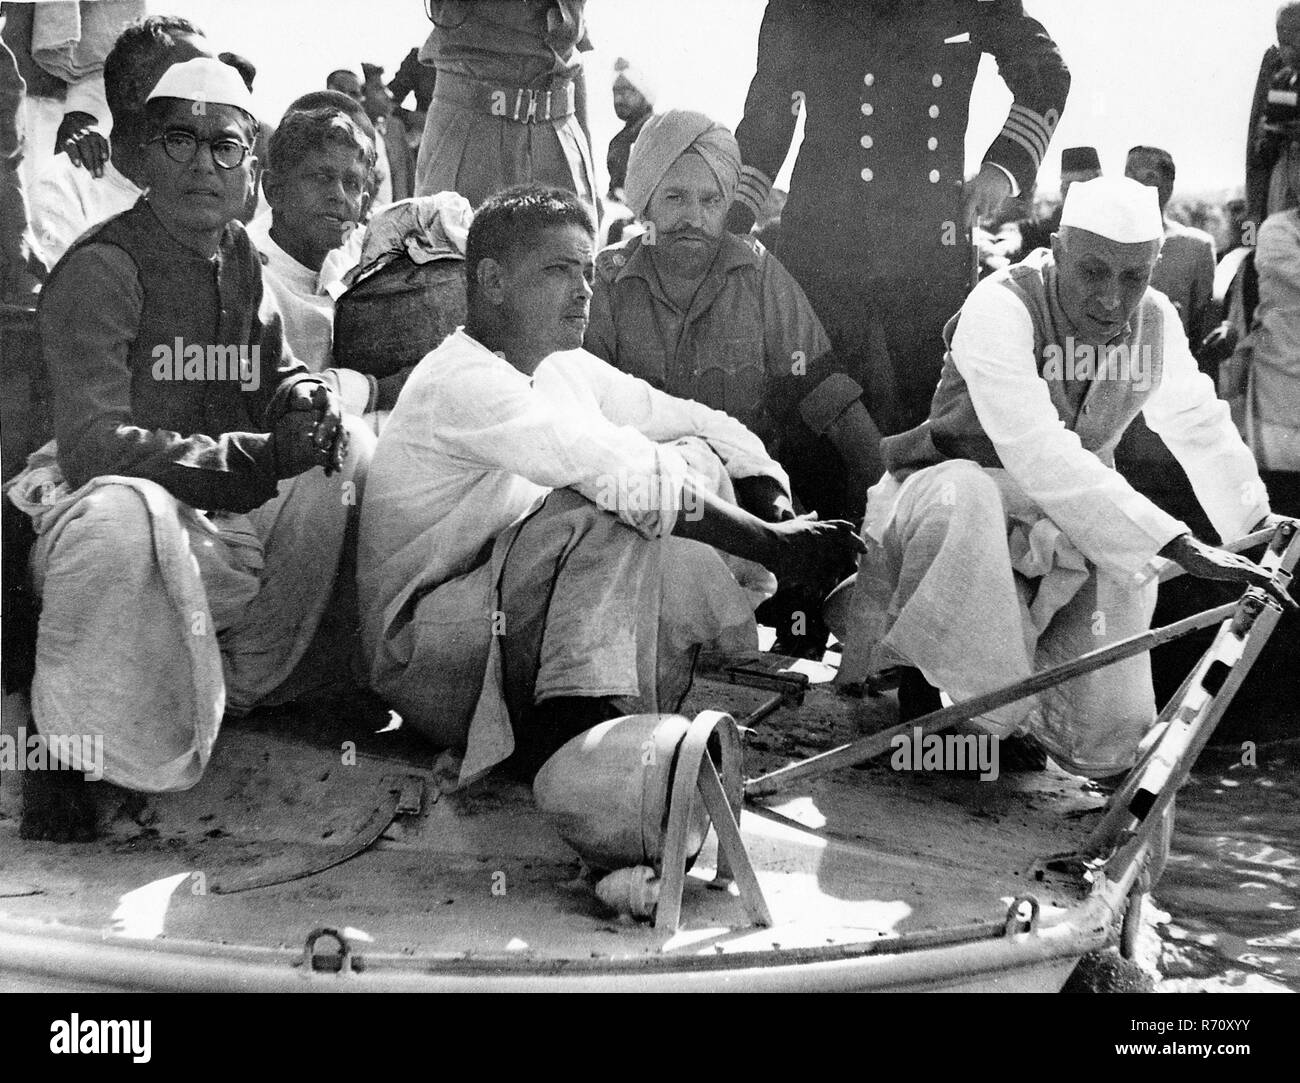 Jawaharlal Nehru, Devdas Gandhi et Ramdas Gandhi avec l'urne avec Mahatma Gandhi cendres sur bateau à la confluence des fleuves Gange, Yamuna et Saraswati, Allahabad, Uttar Pradesh, Inde, 12 février 1948, ancienne image vintage du 1900 Banque D'Images